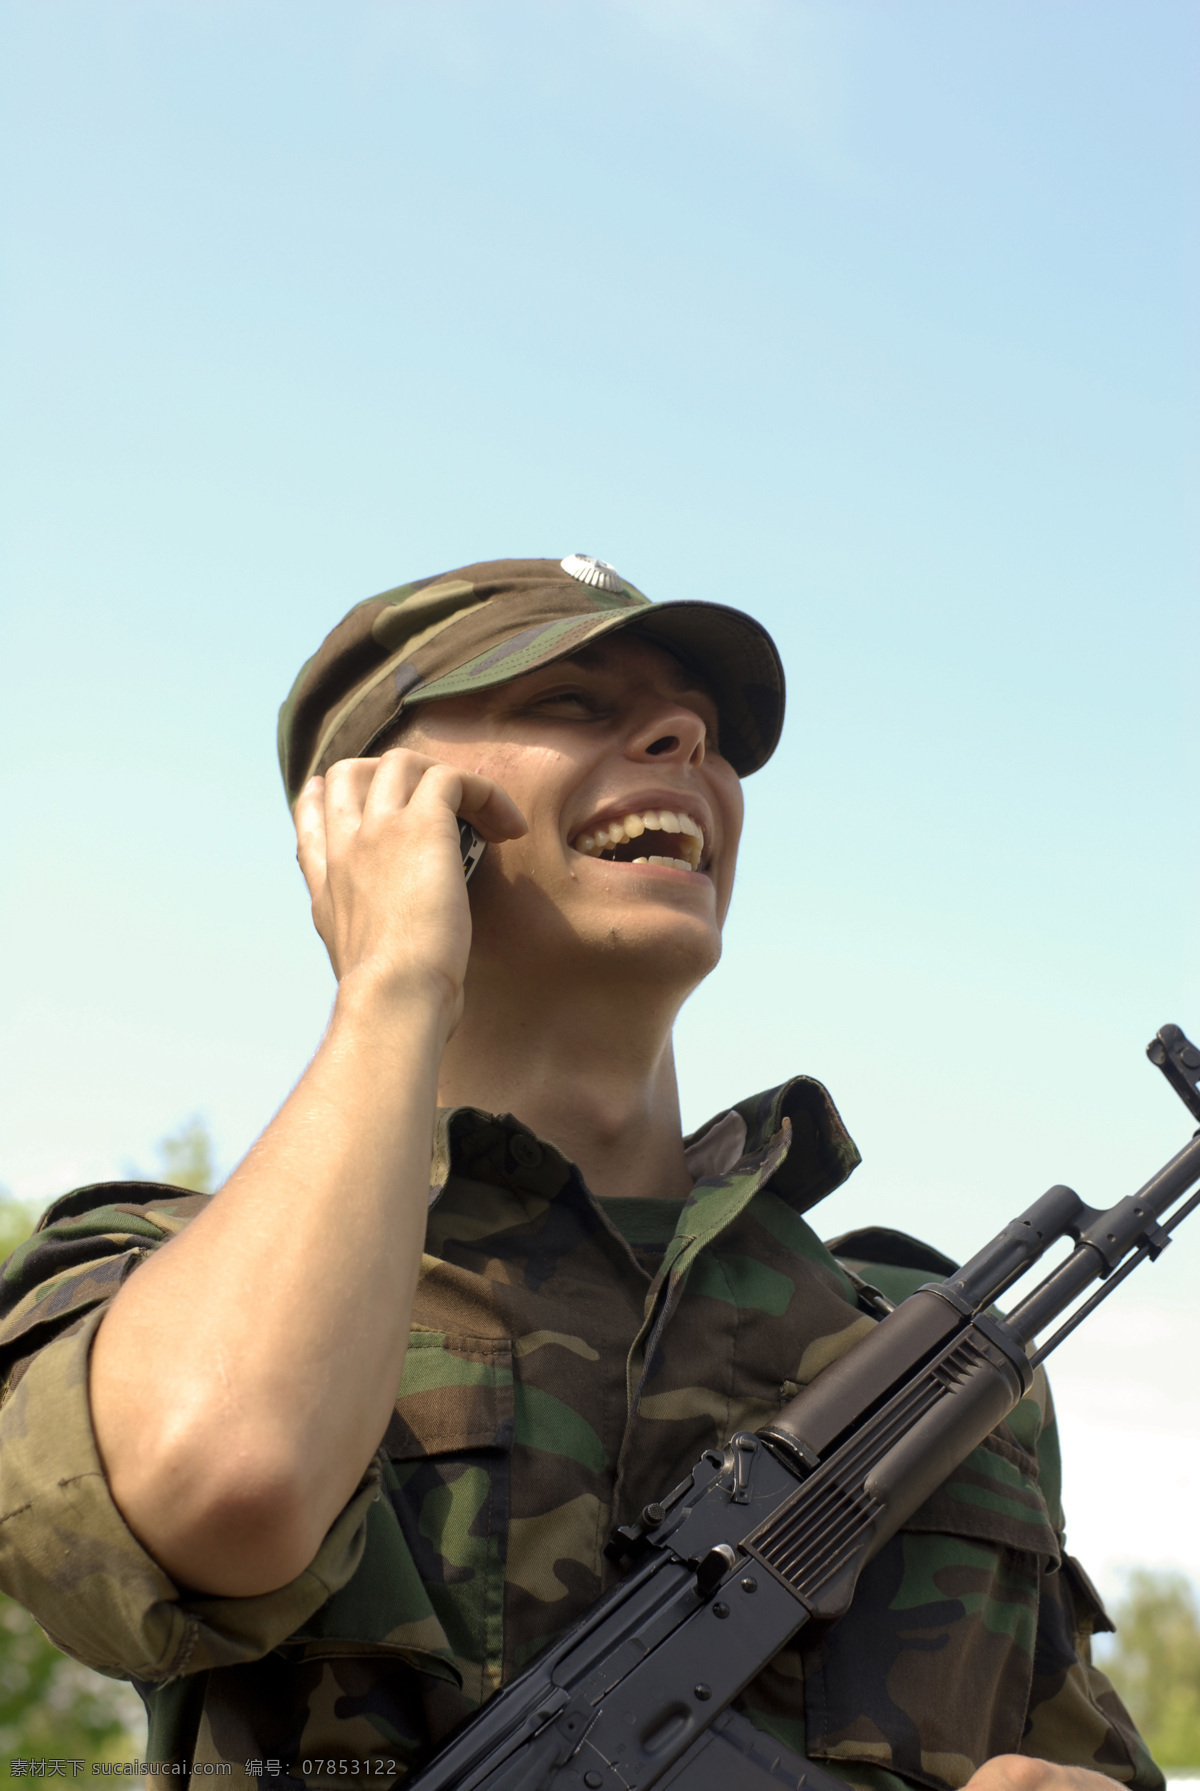 打电话 士兵图片 军事主题 士兵 战士 军人 冲锋枪 枪支 军事武器 现代科技